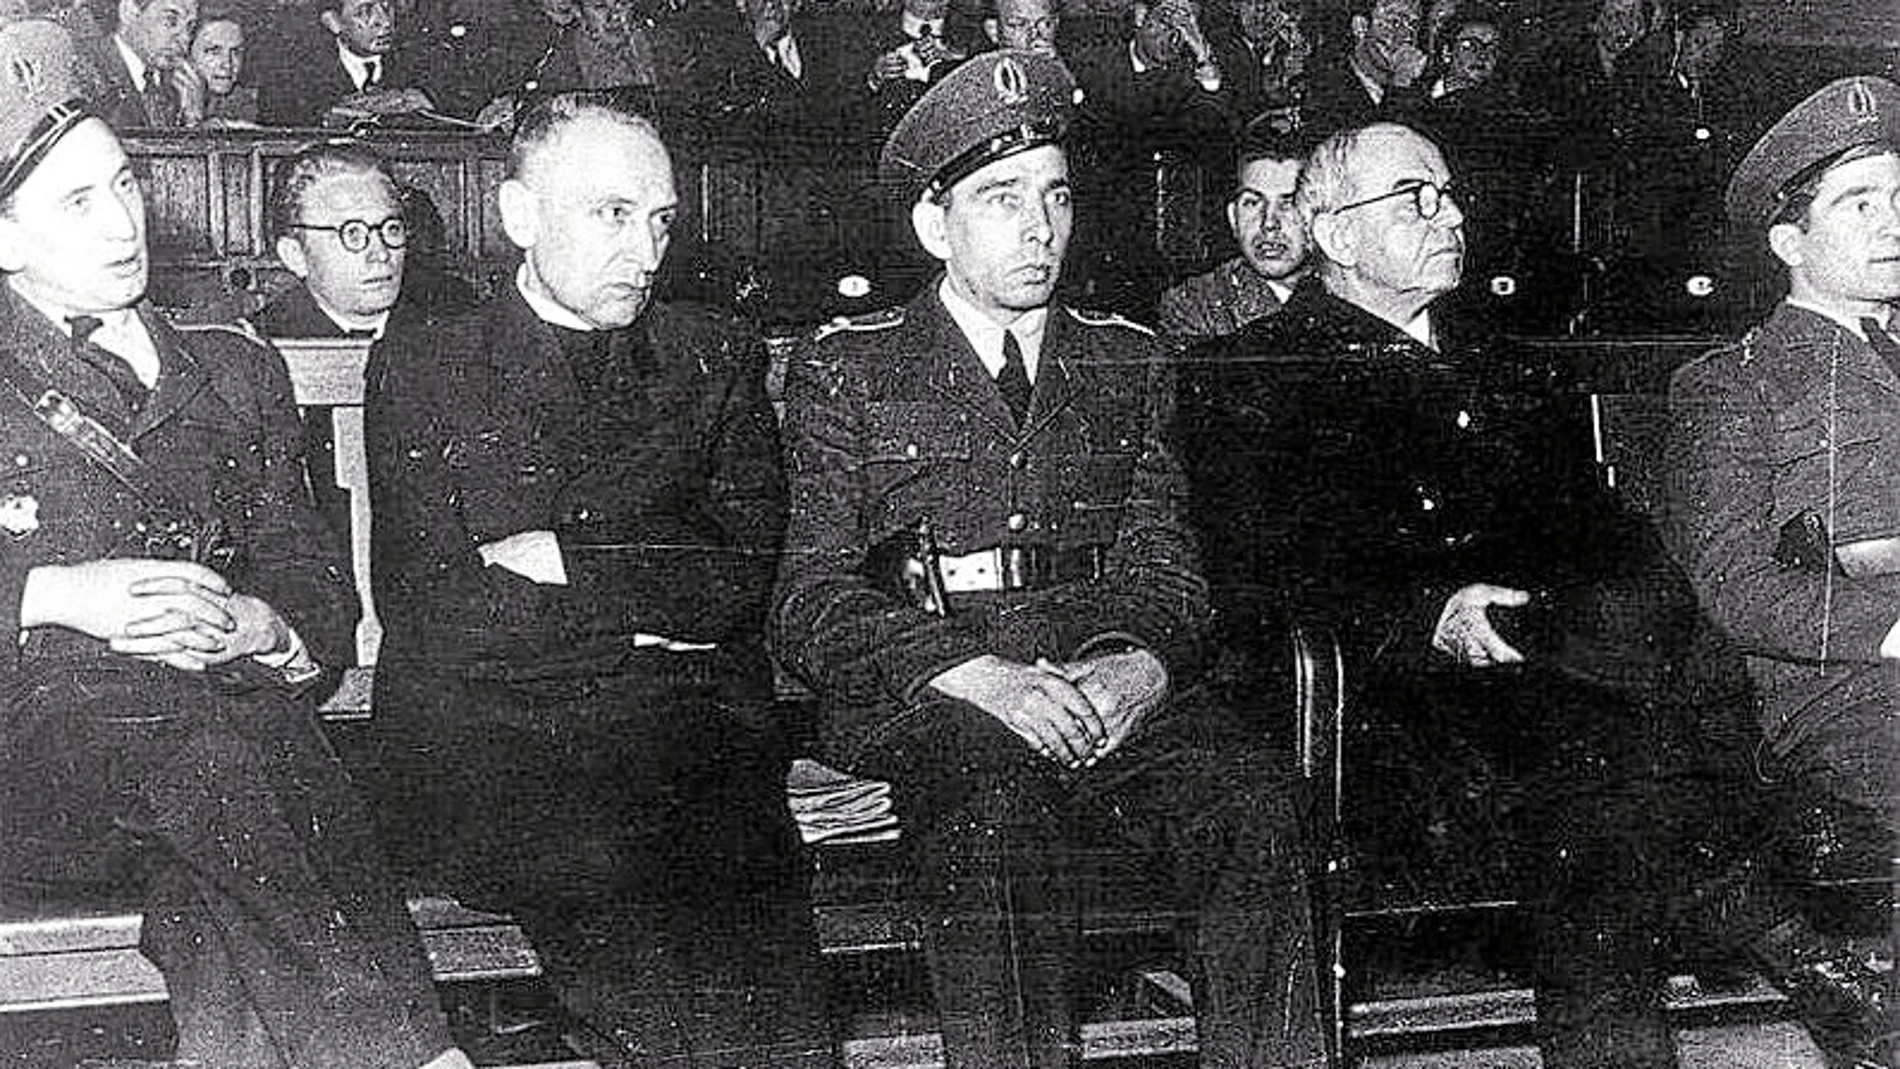 El cardenal, entre dos guardias, durante su comparecencia ante el tribunal que le juzgaba en 1949